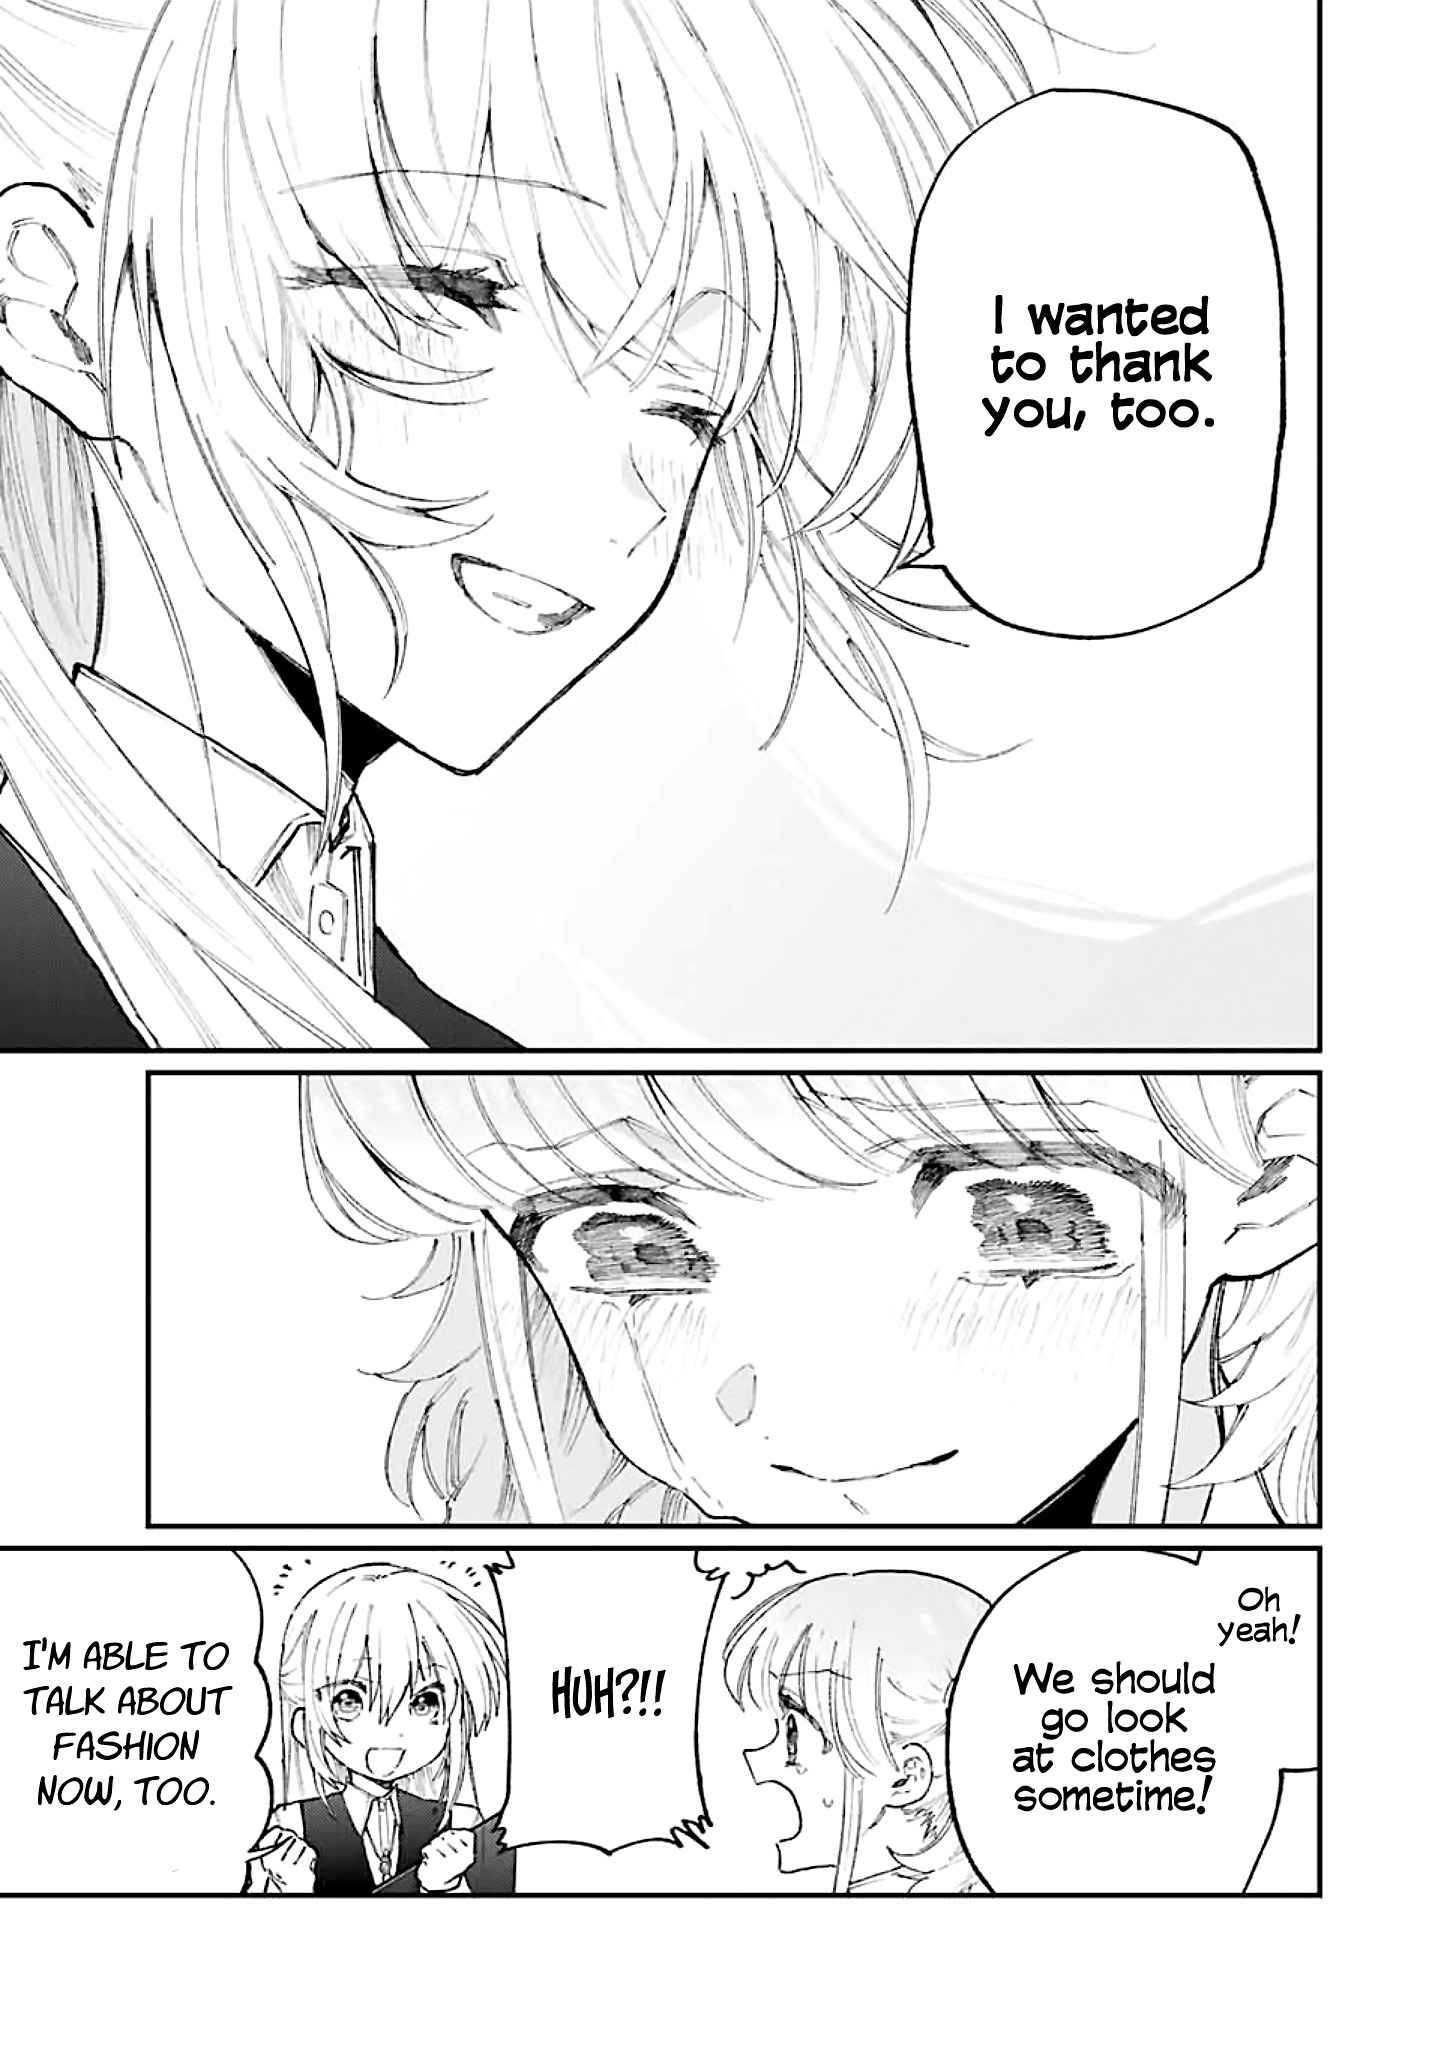 Shikimori’s not just a cutie Chapter 133